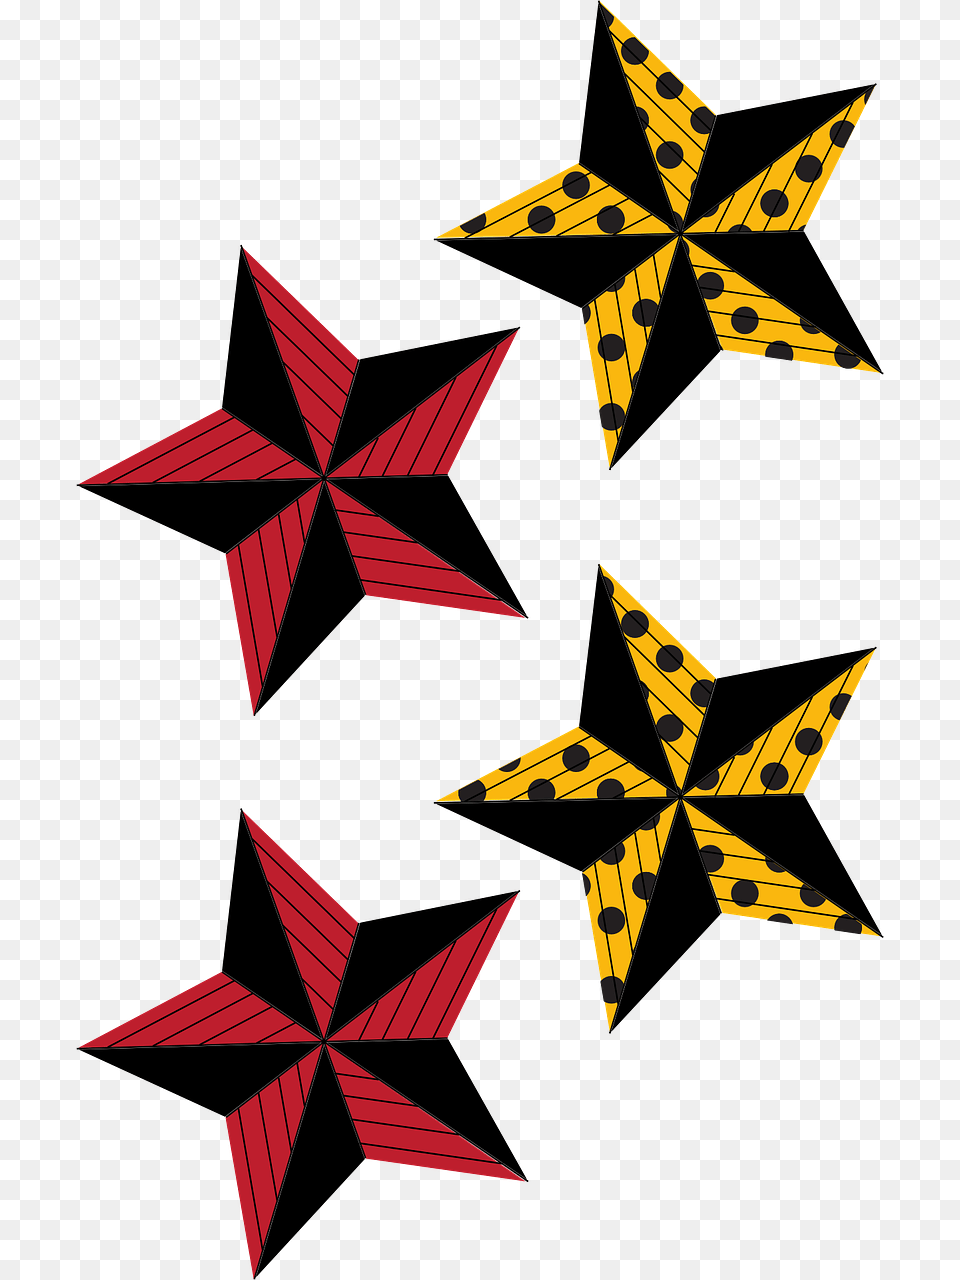 Star Raghu Polka Dots Picture Parasol Plan Symbol, Star Symbol, Pattern, Rocket, Weapon Free Transparent Png